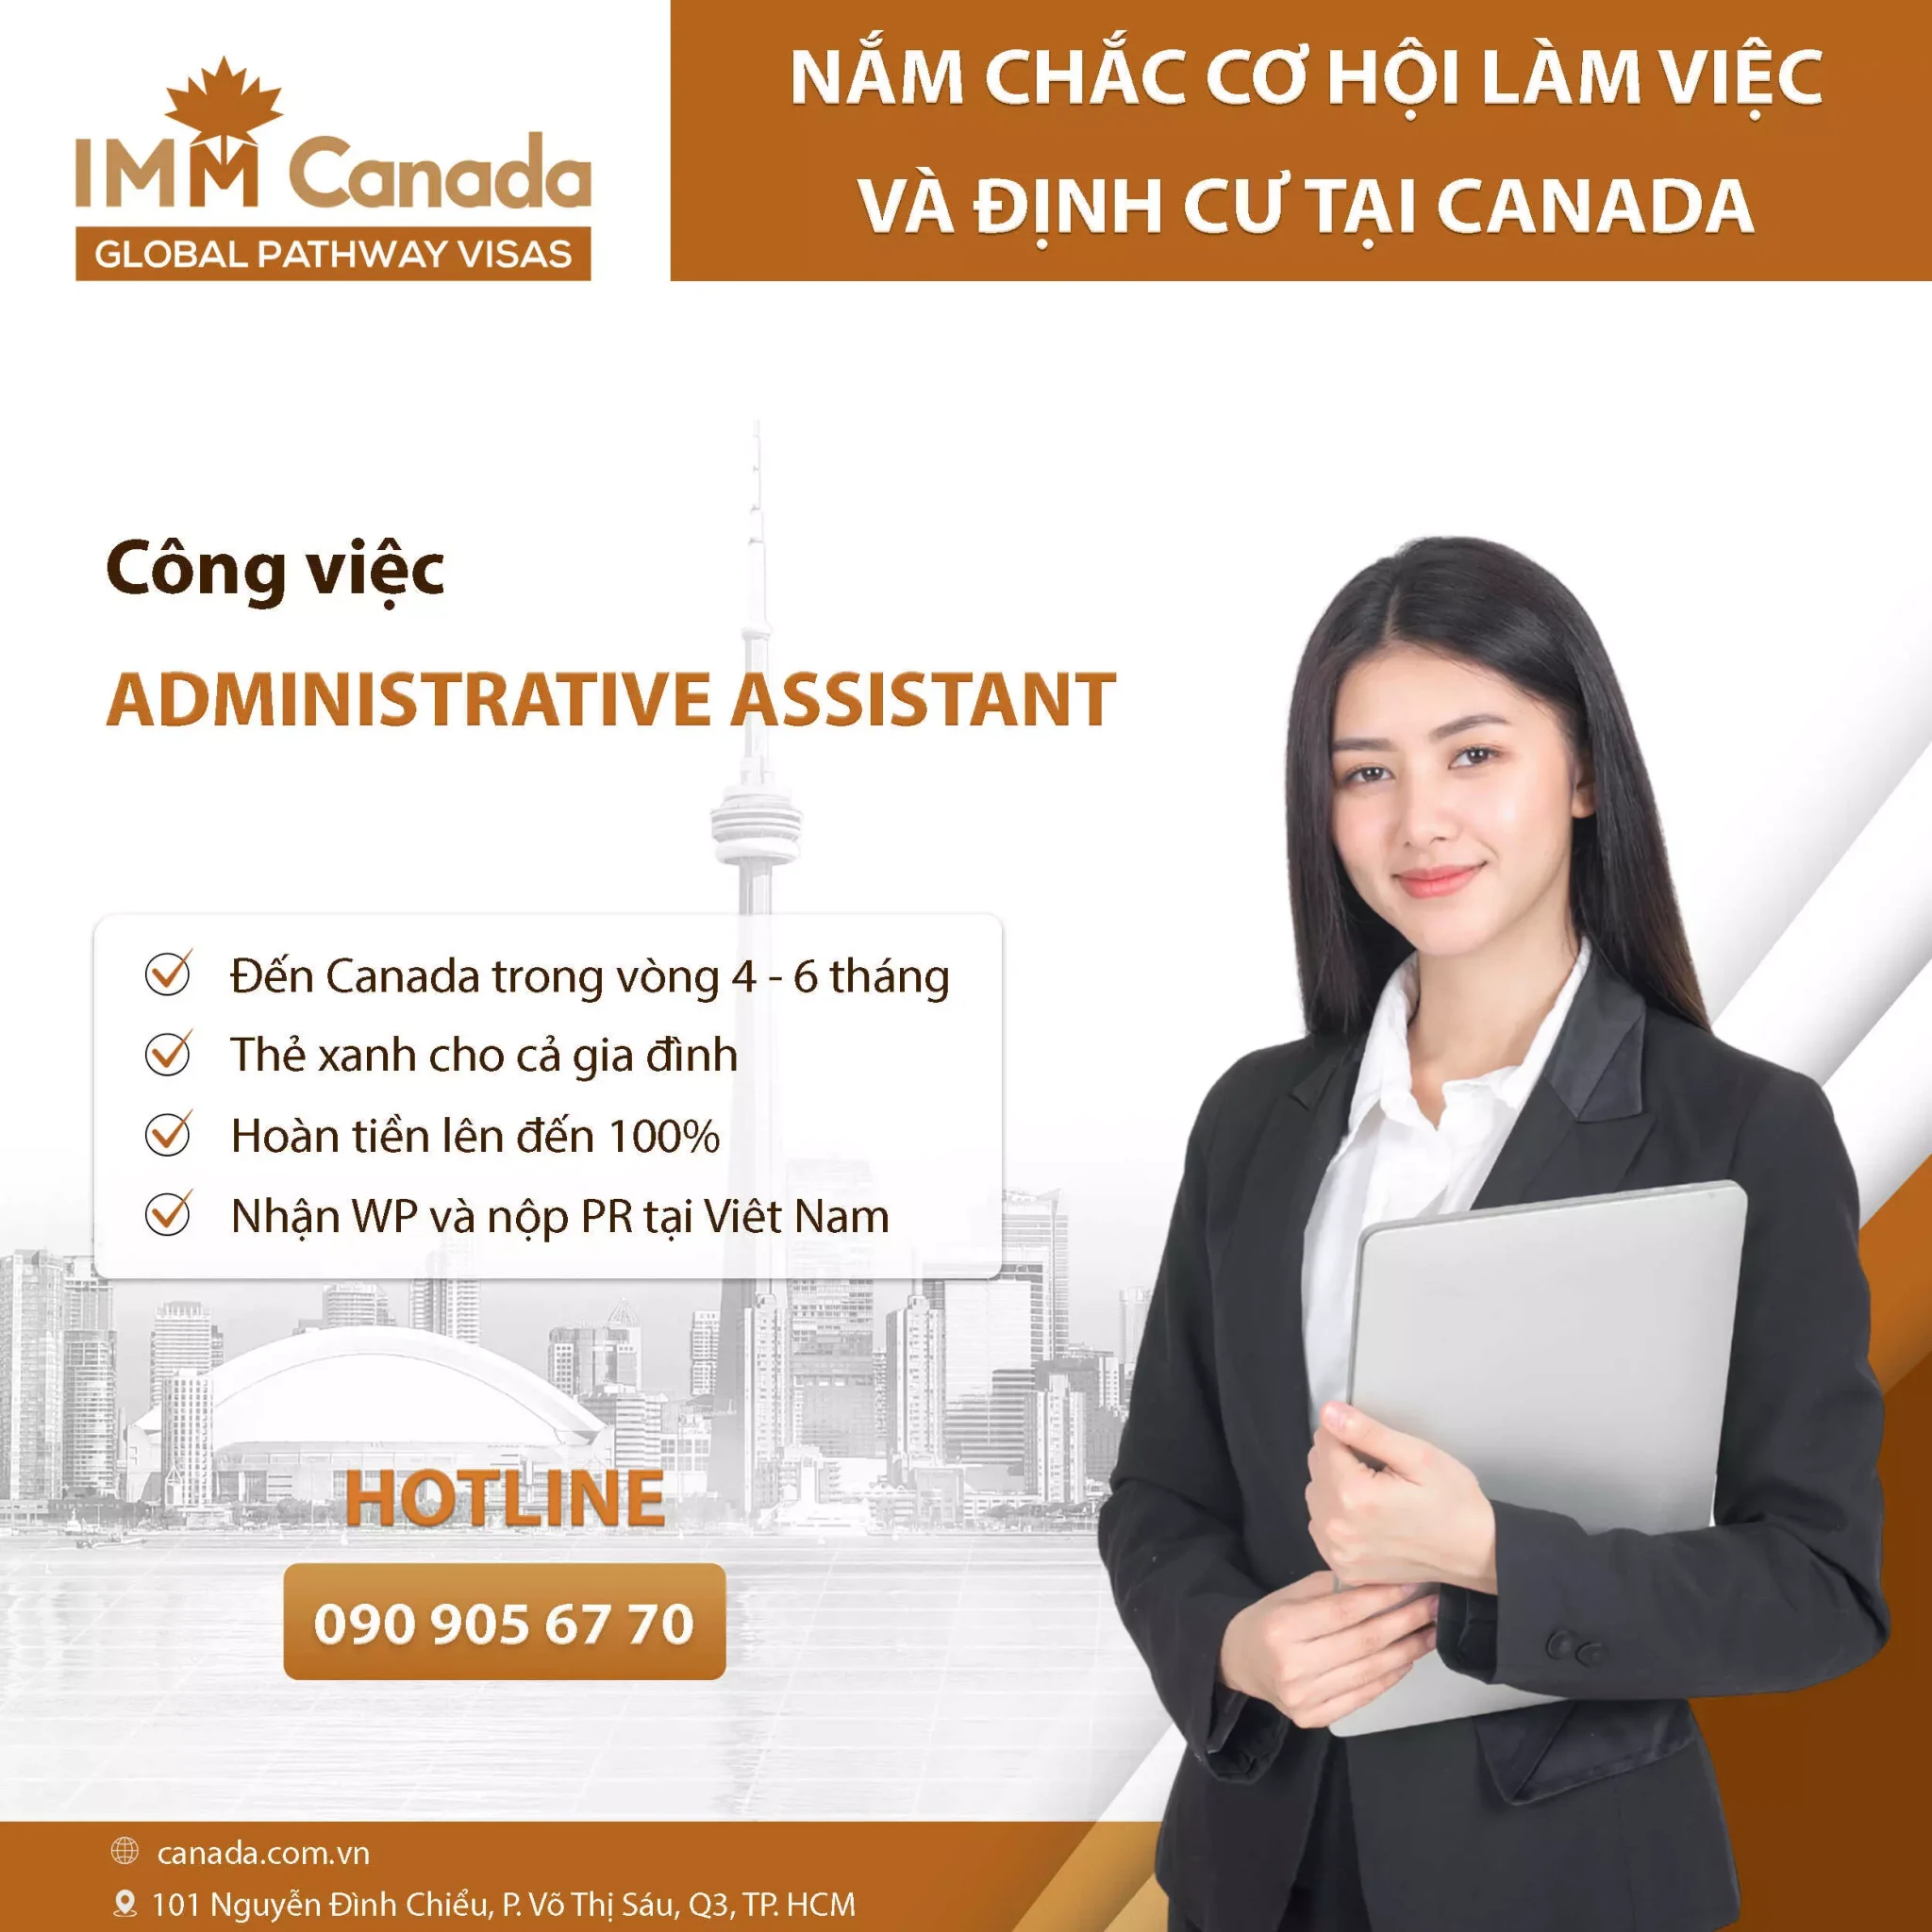 Ứng tuyển công việc văn phòng Canada có sẵn - Administrative Assistant